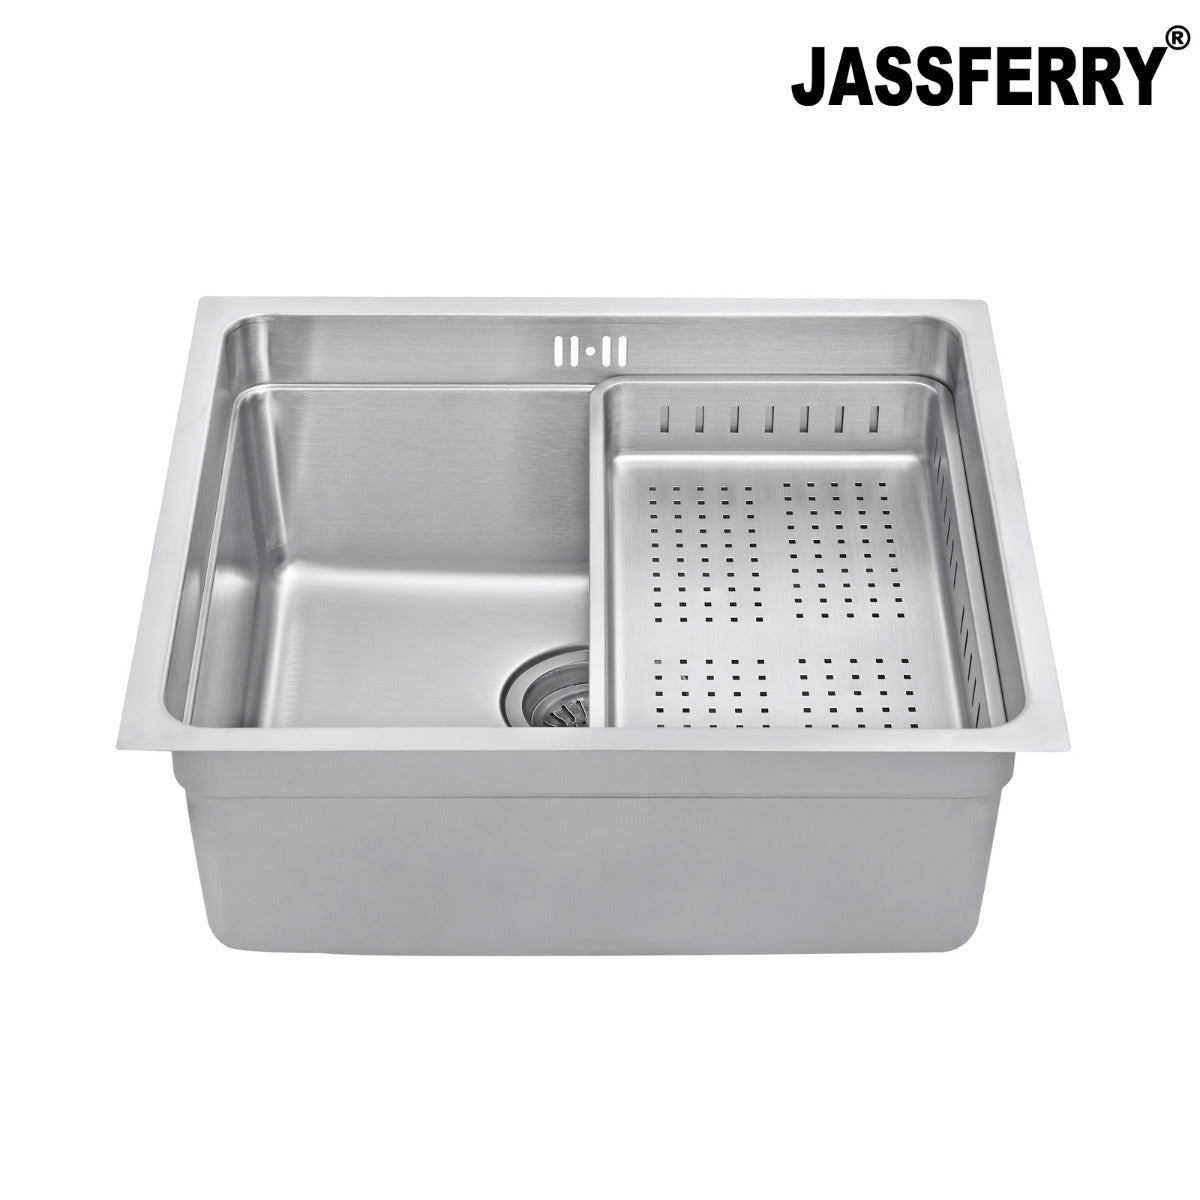 JassferryJASSFERRY Undermount Stainless Steel Kitchen Sink 1 Bowl Dish Drainer RackKitchen Sinks